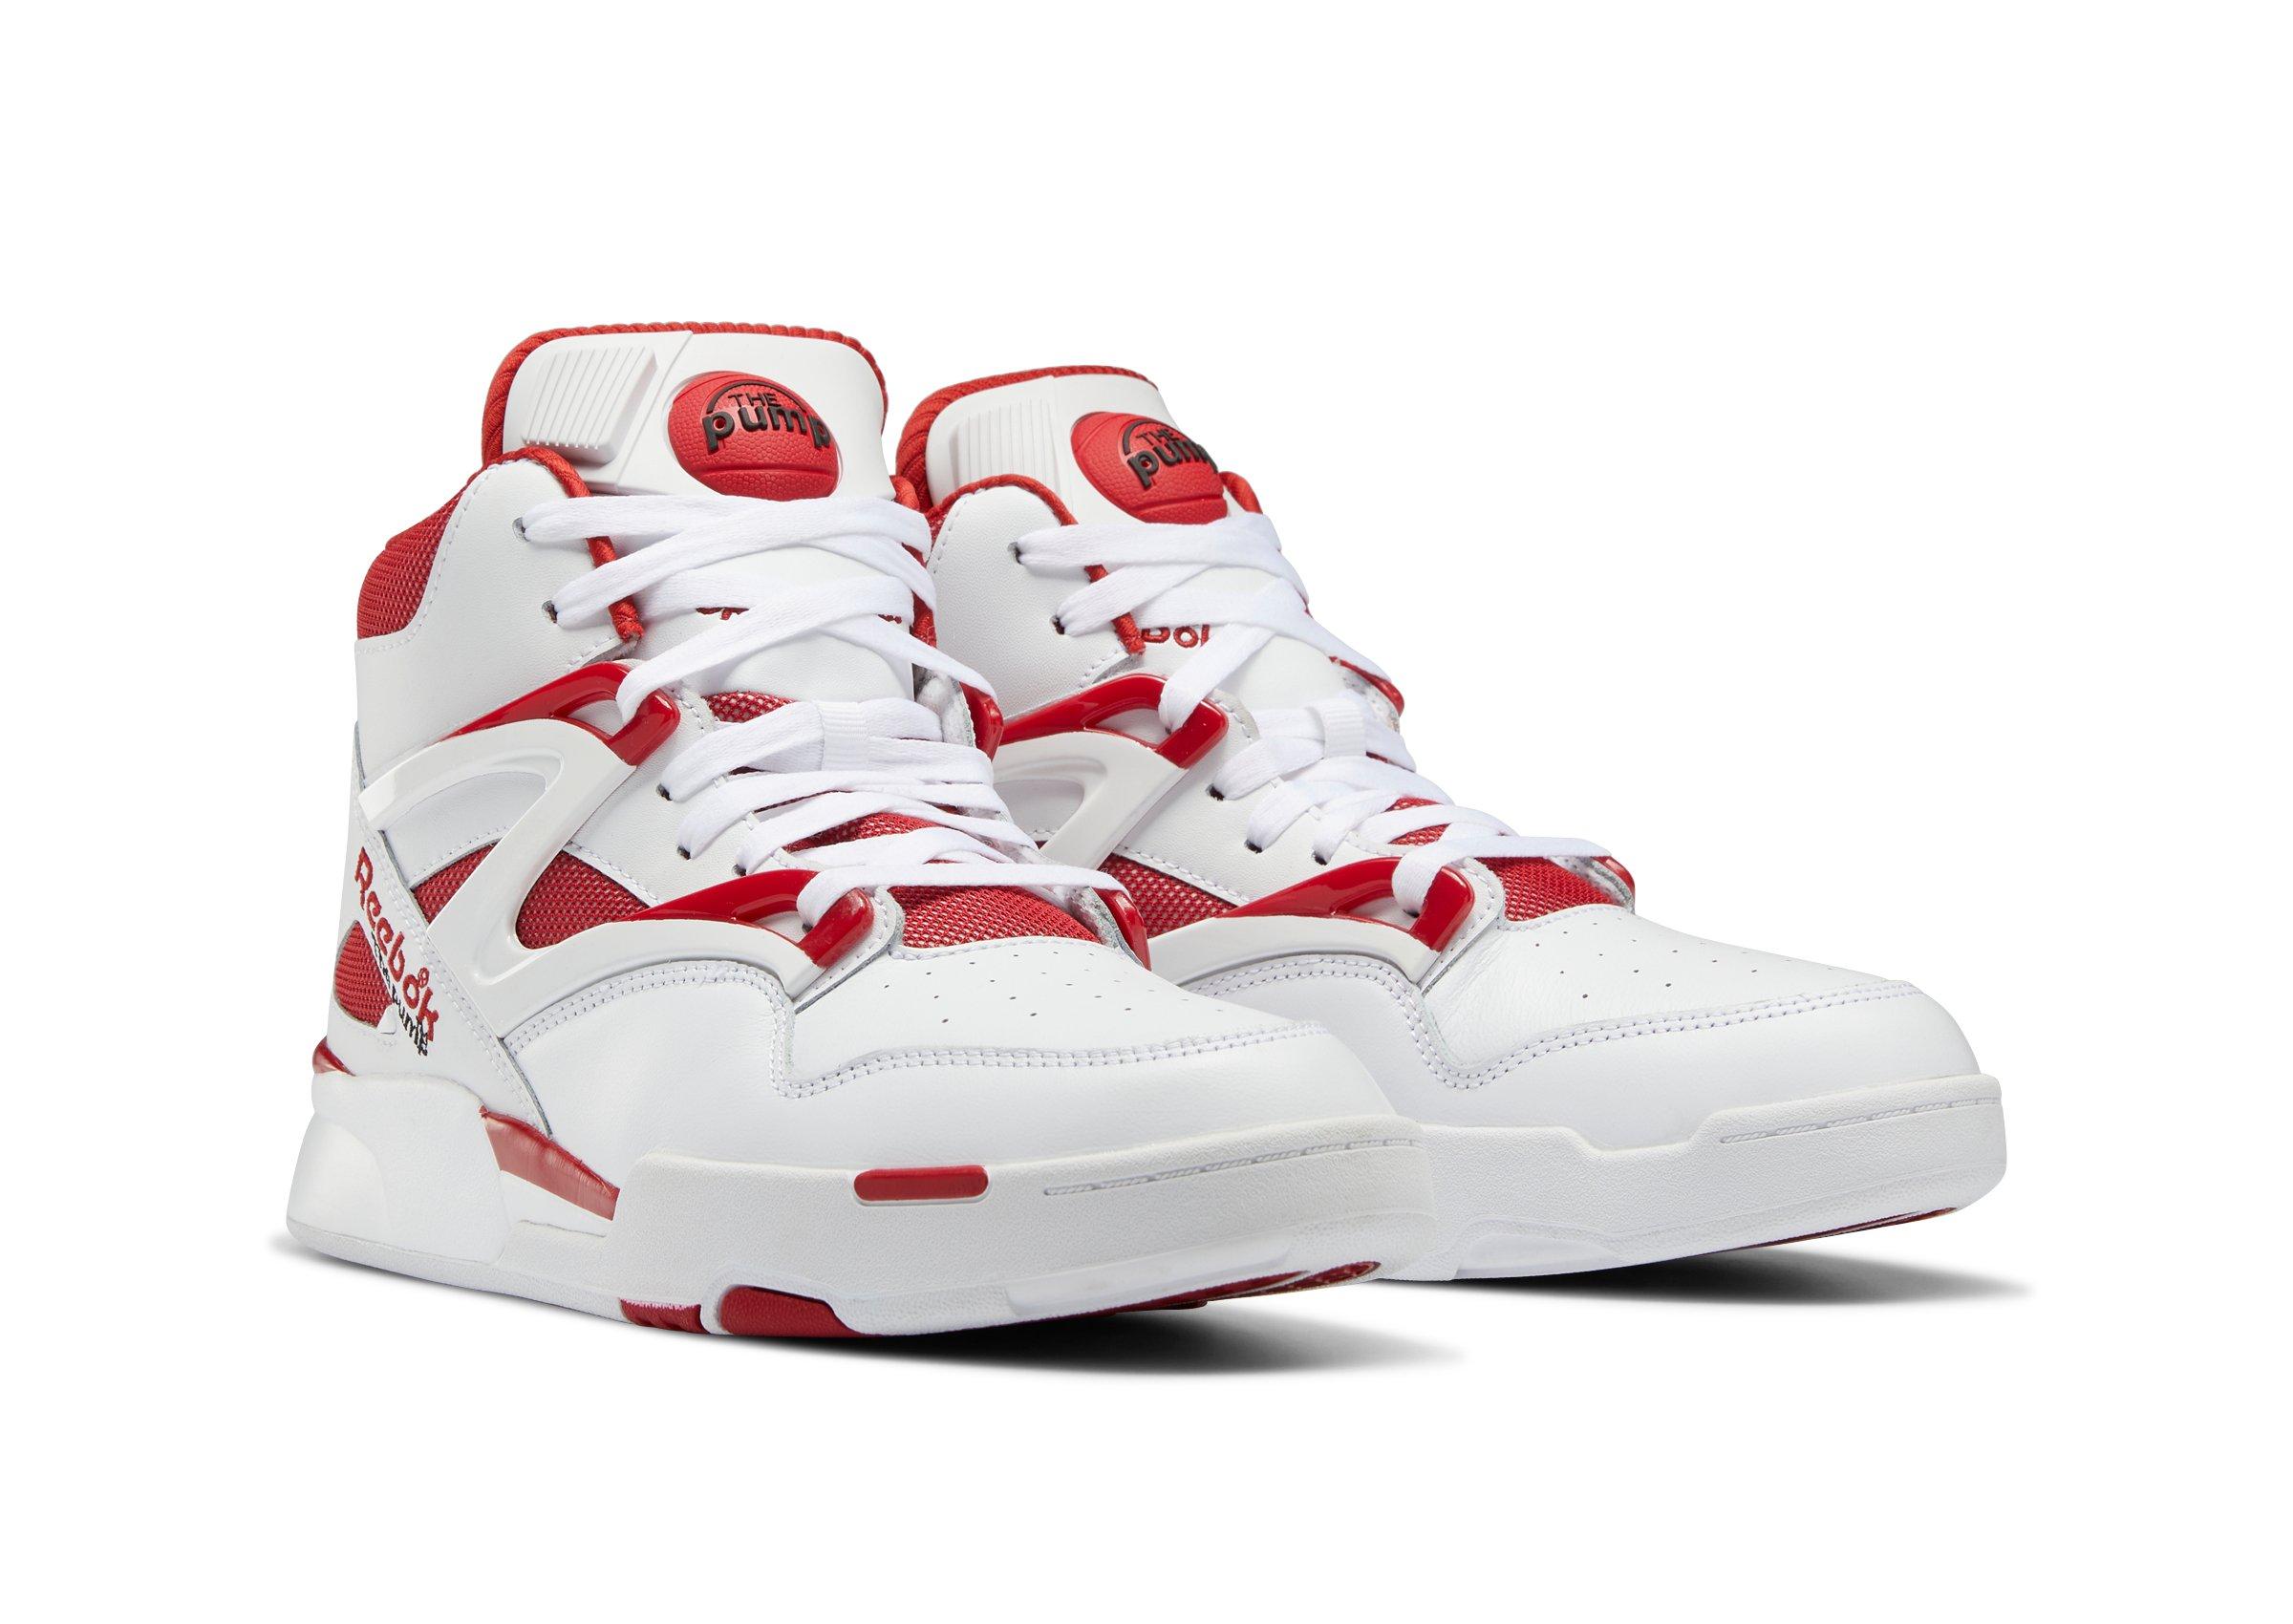 Sneakers Release – “Dee Brown” Reebok Pump Omni